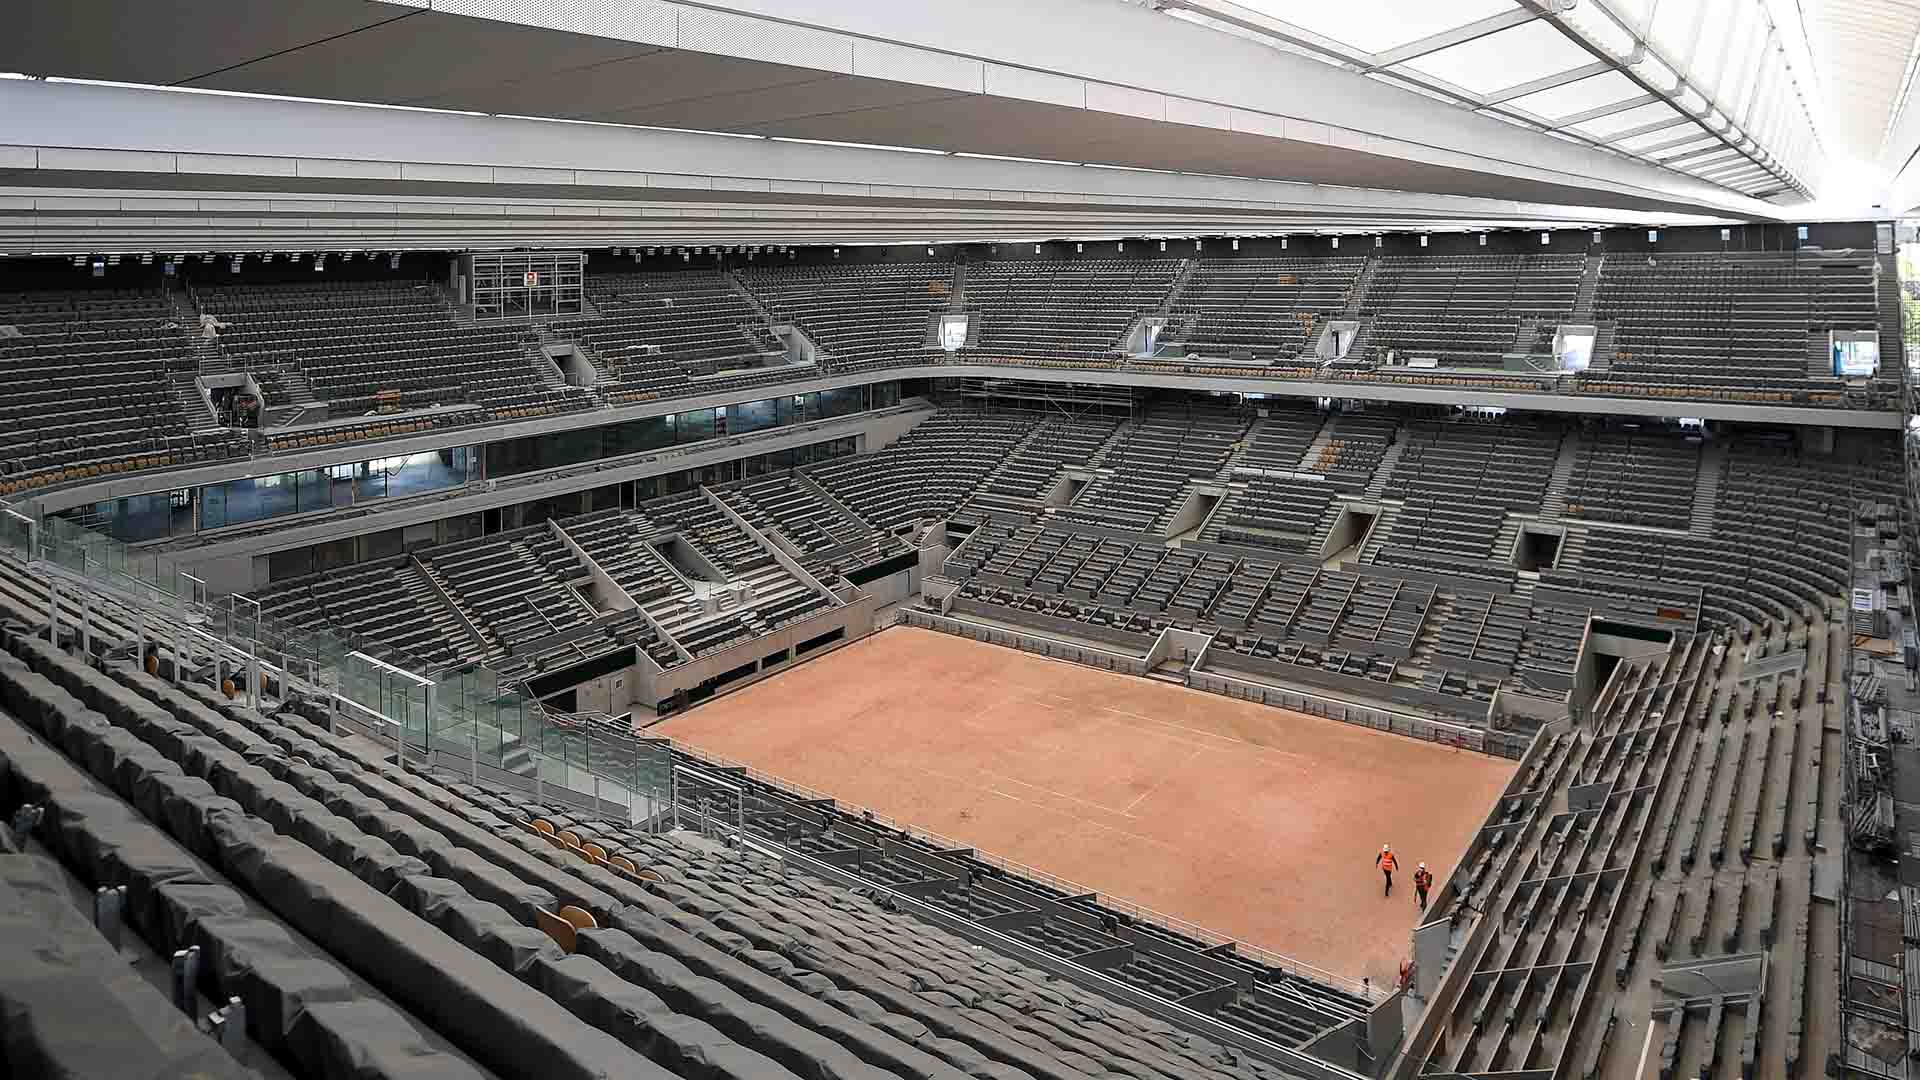 Roland Garros tendrá lugar del 27 de septiembre al 11 de octubre de 2020.